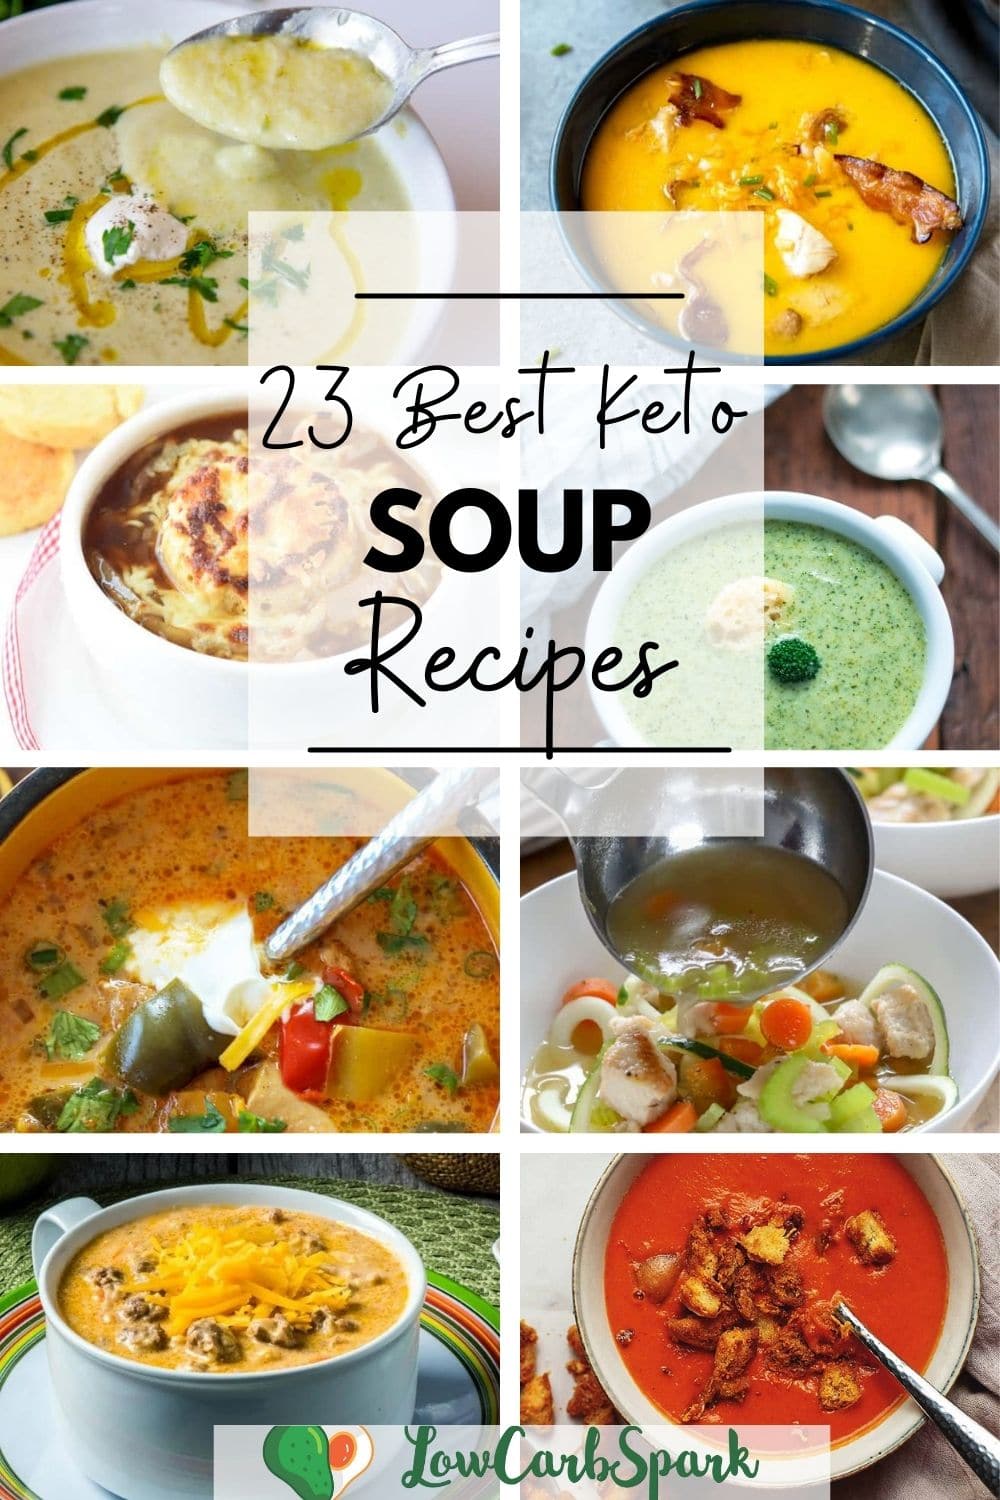 23 Keto Soup Recipes - Best Low Carb Soups